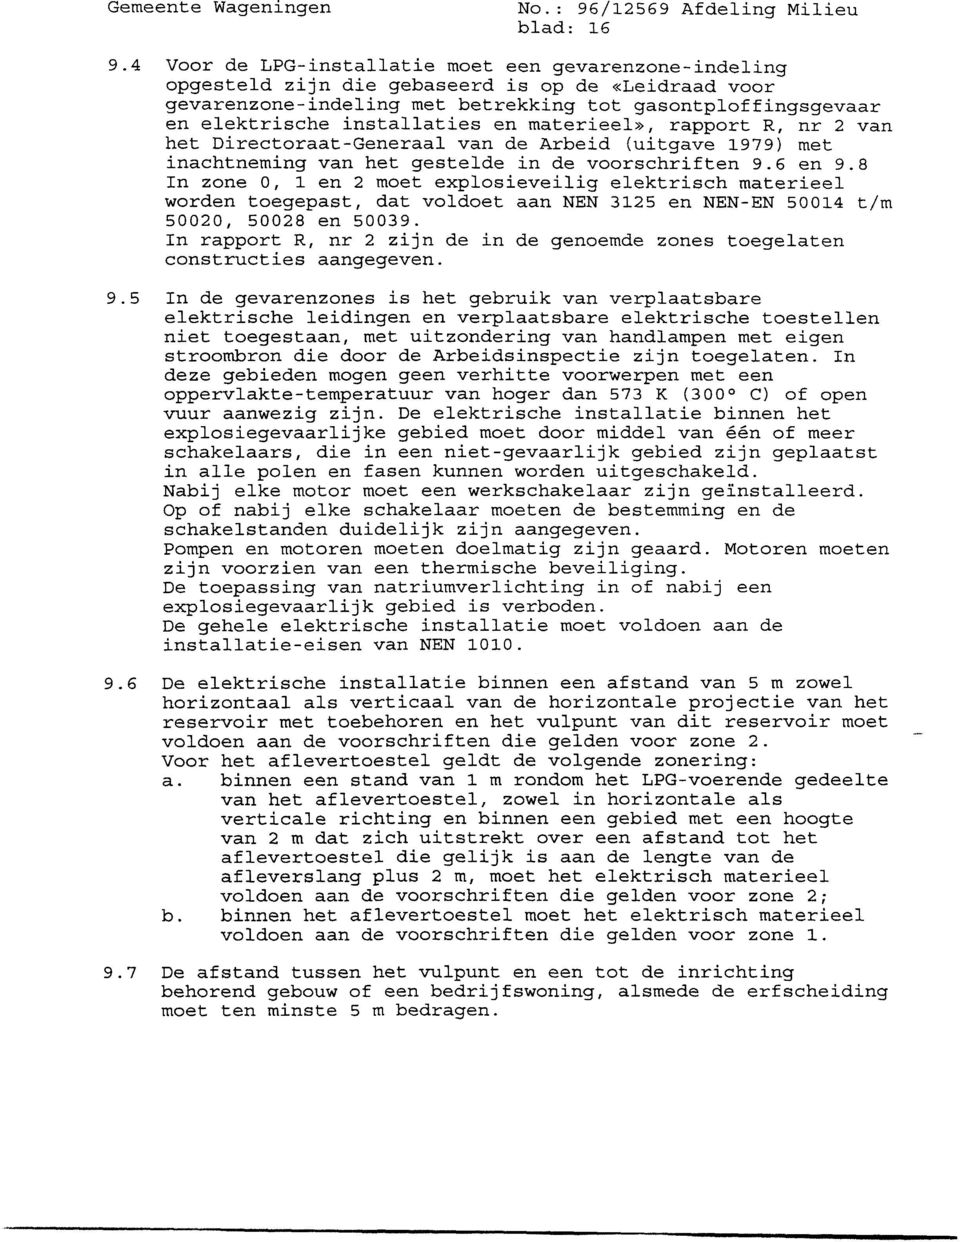 en materieel», rapport R, nr 2 van het Directoraat-Generaal van de Arbeid (uitgave 1979) met inachtneming van het gestelde in de voorschriften 9.6 en 9.